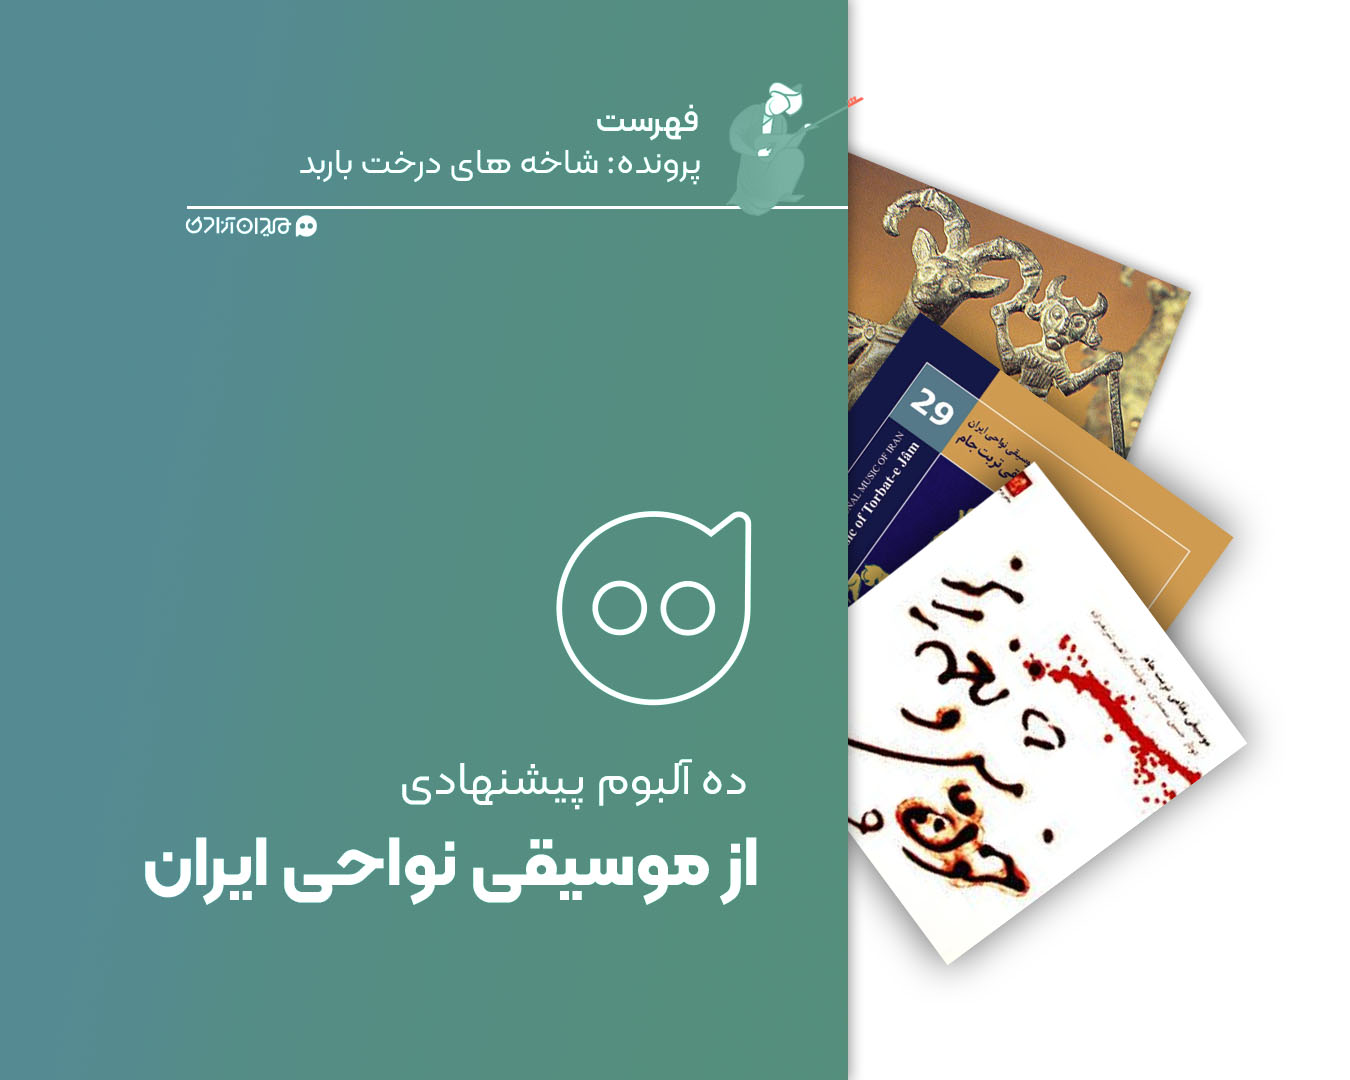 فهرست: ده آلبوم برتر موسیقی نواحی ایران